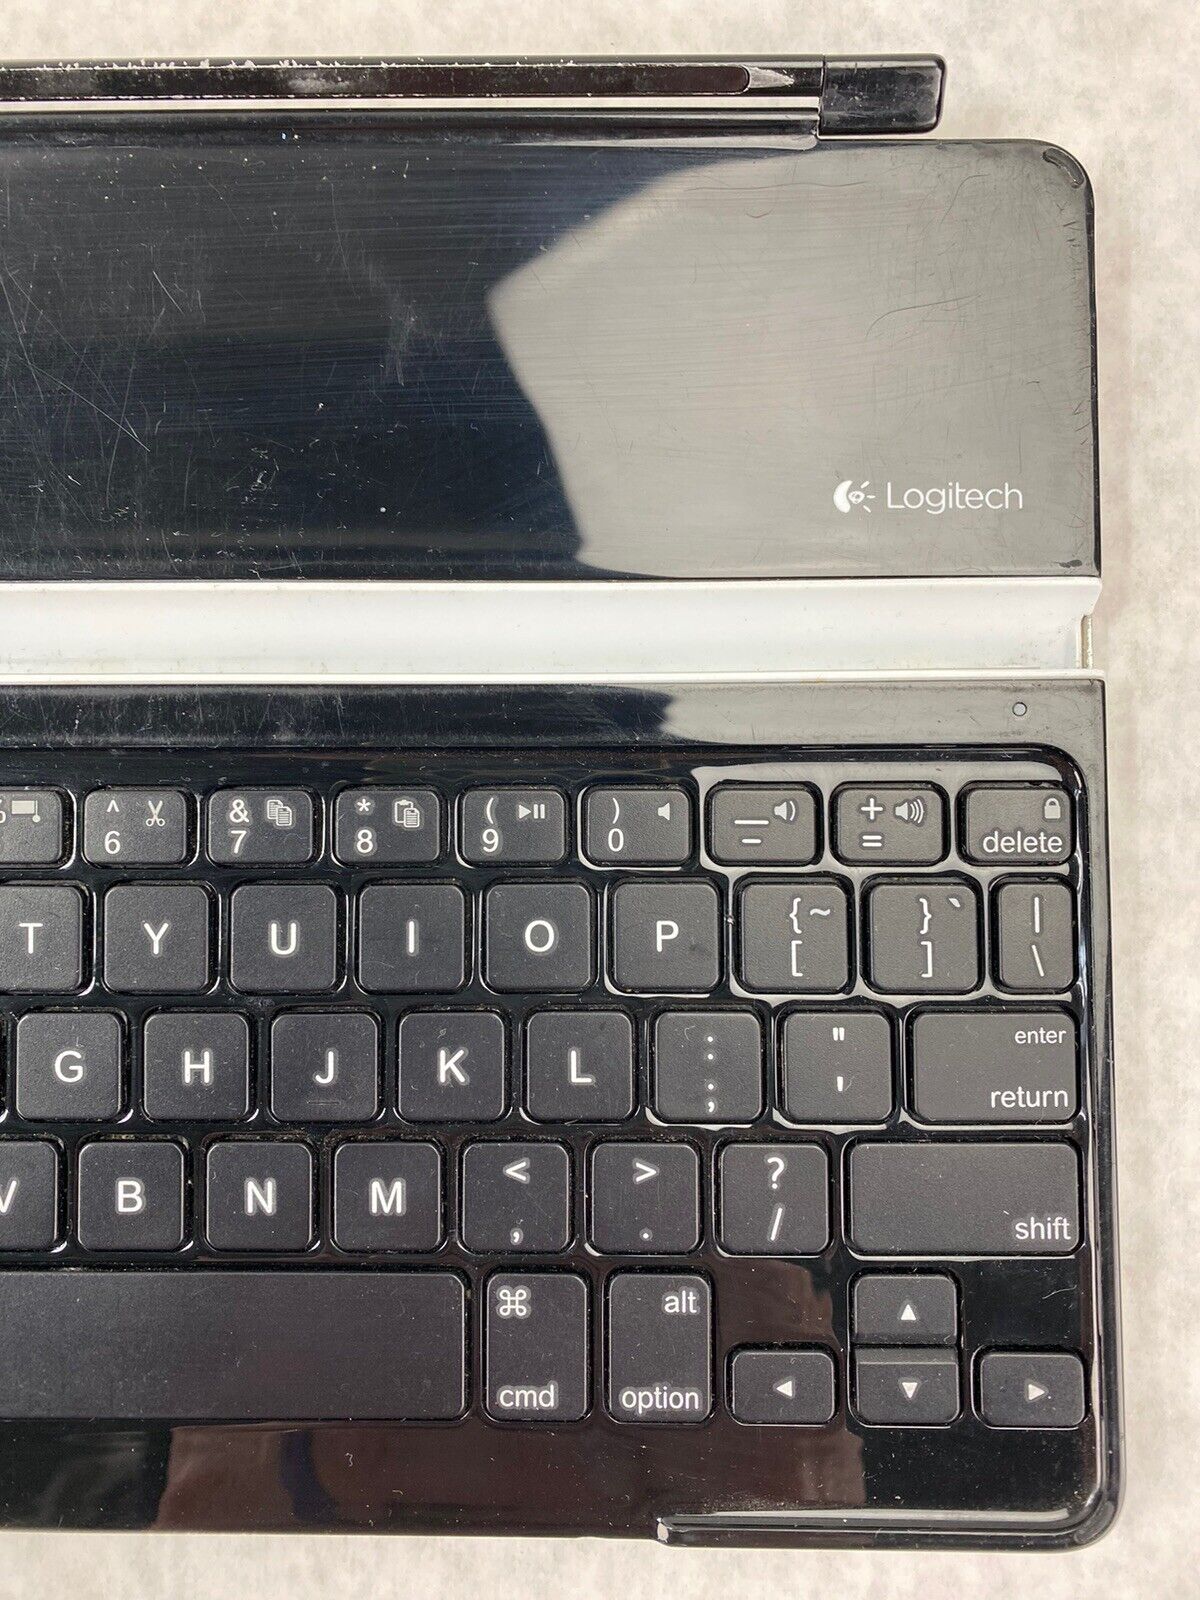 Logitech Y-R0032 Bluetooth Wireless Ultra Thin Keyboard Slim Cover iPad 2 3 4